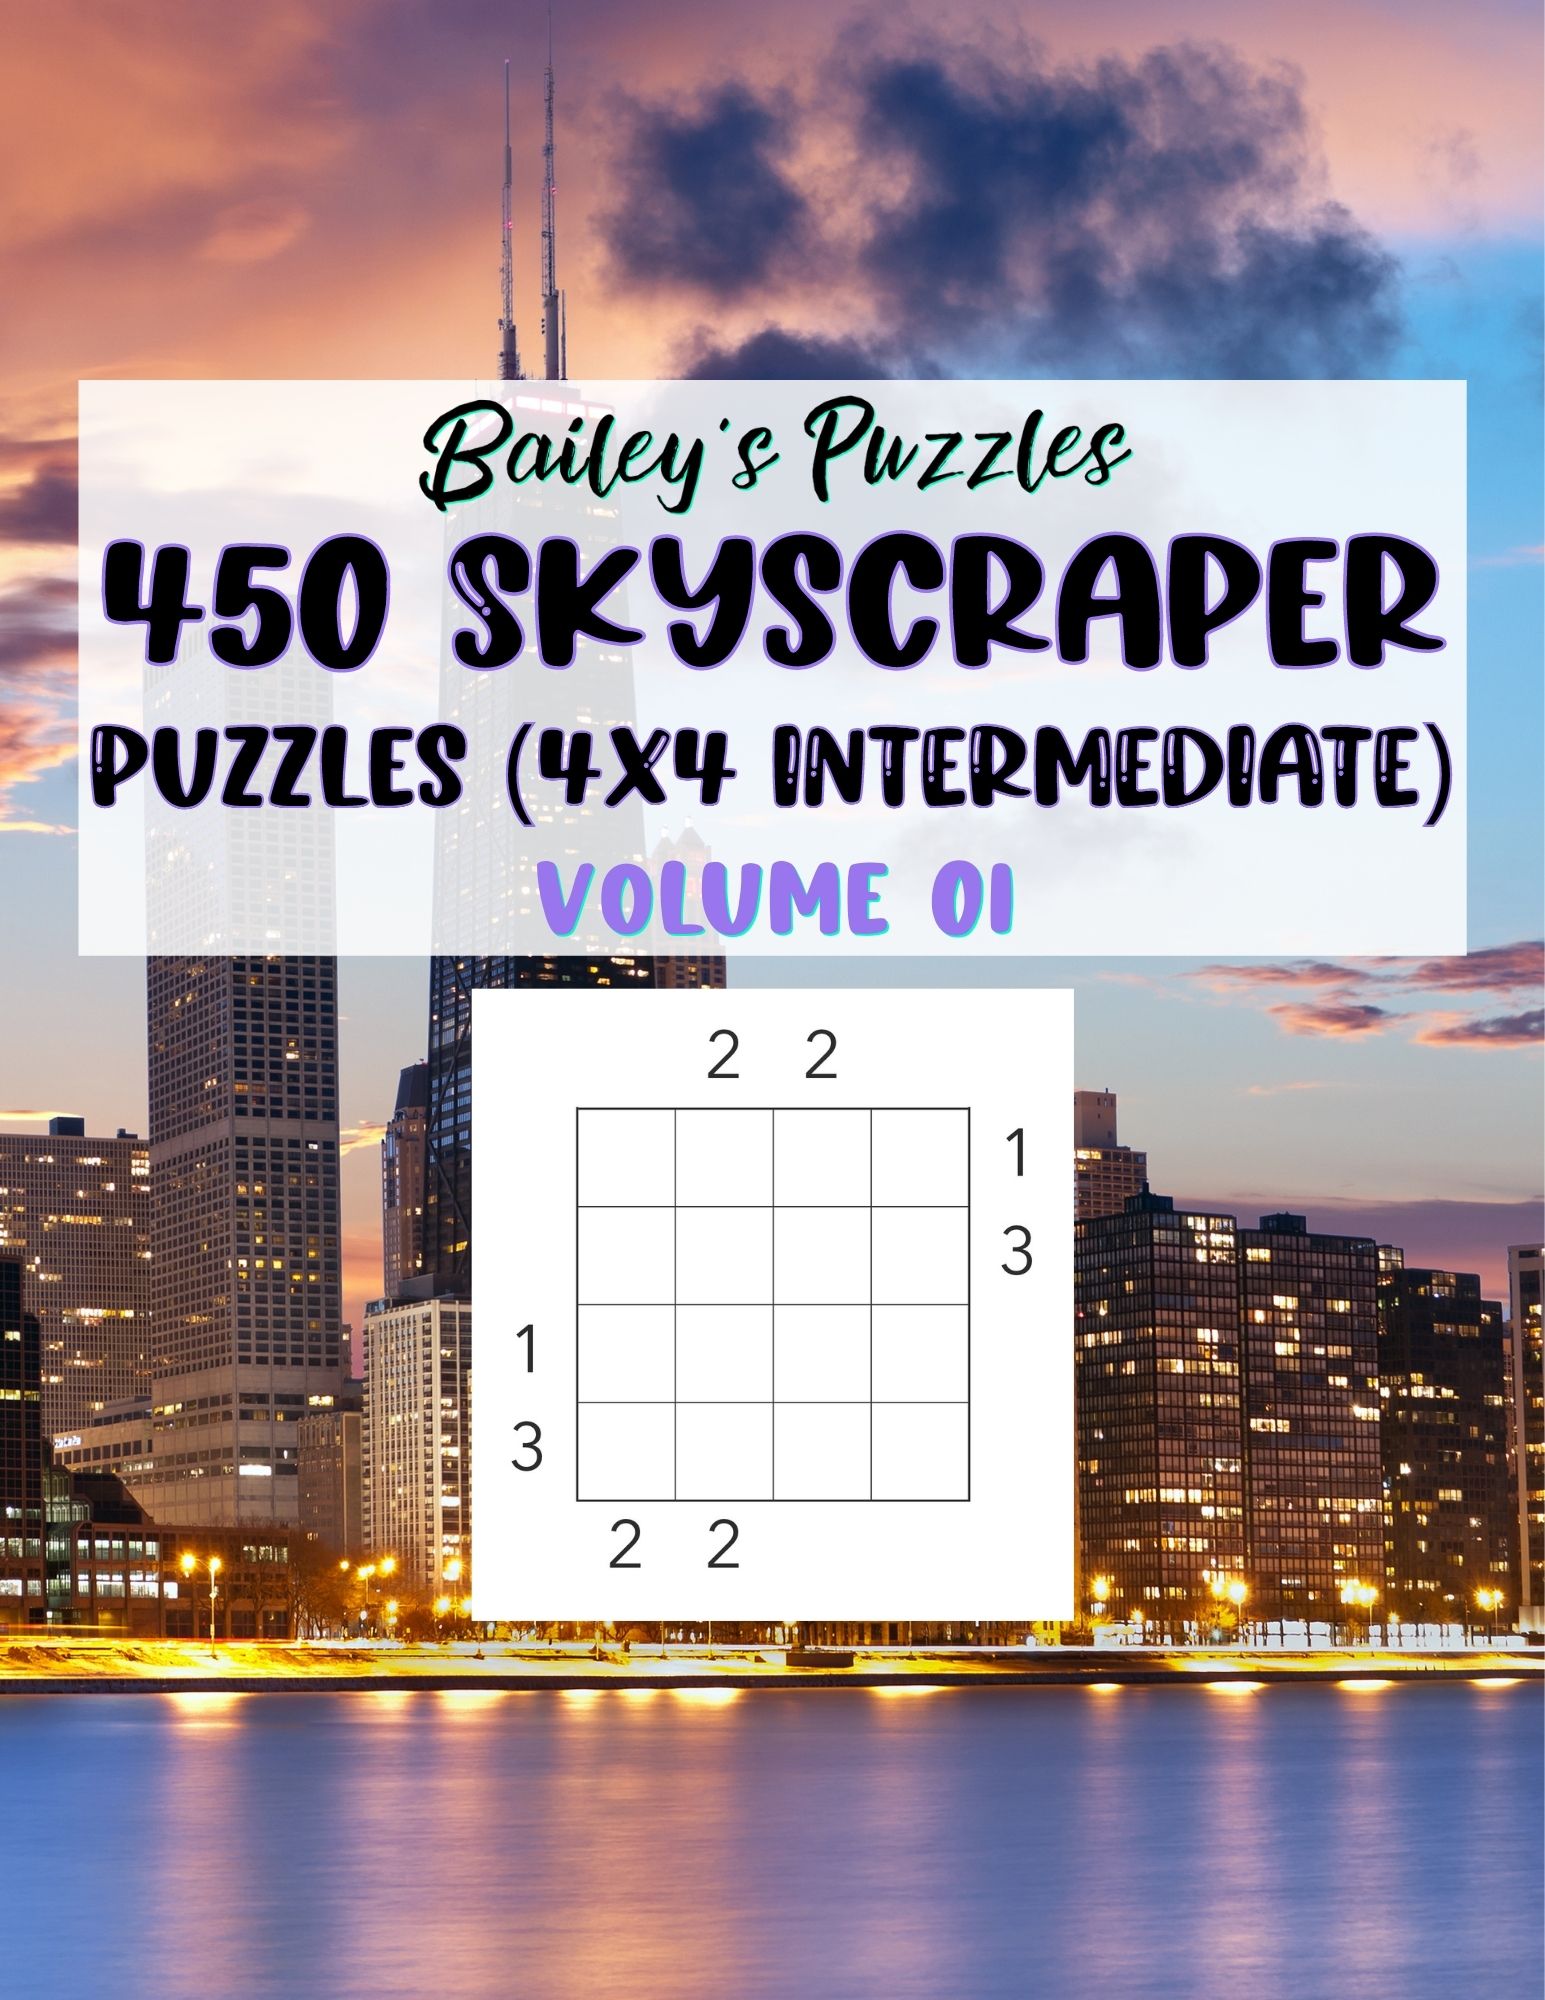 Front Cover - 450 Skyscraper Puzzles (4x4, intermediate)